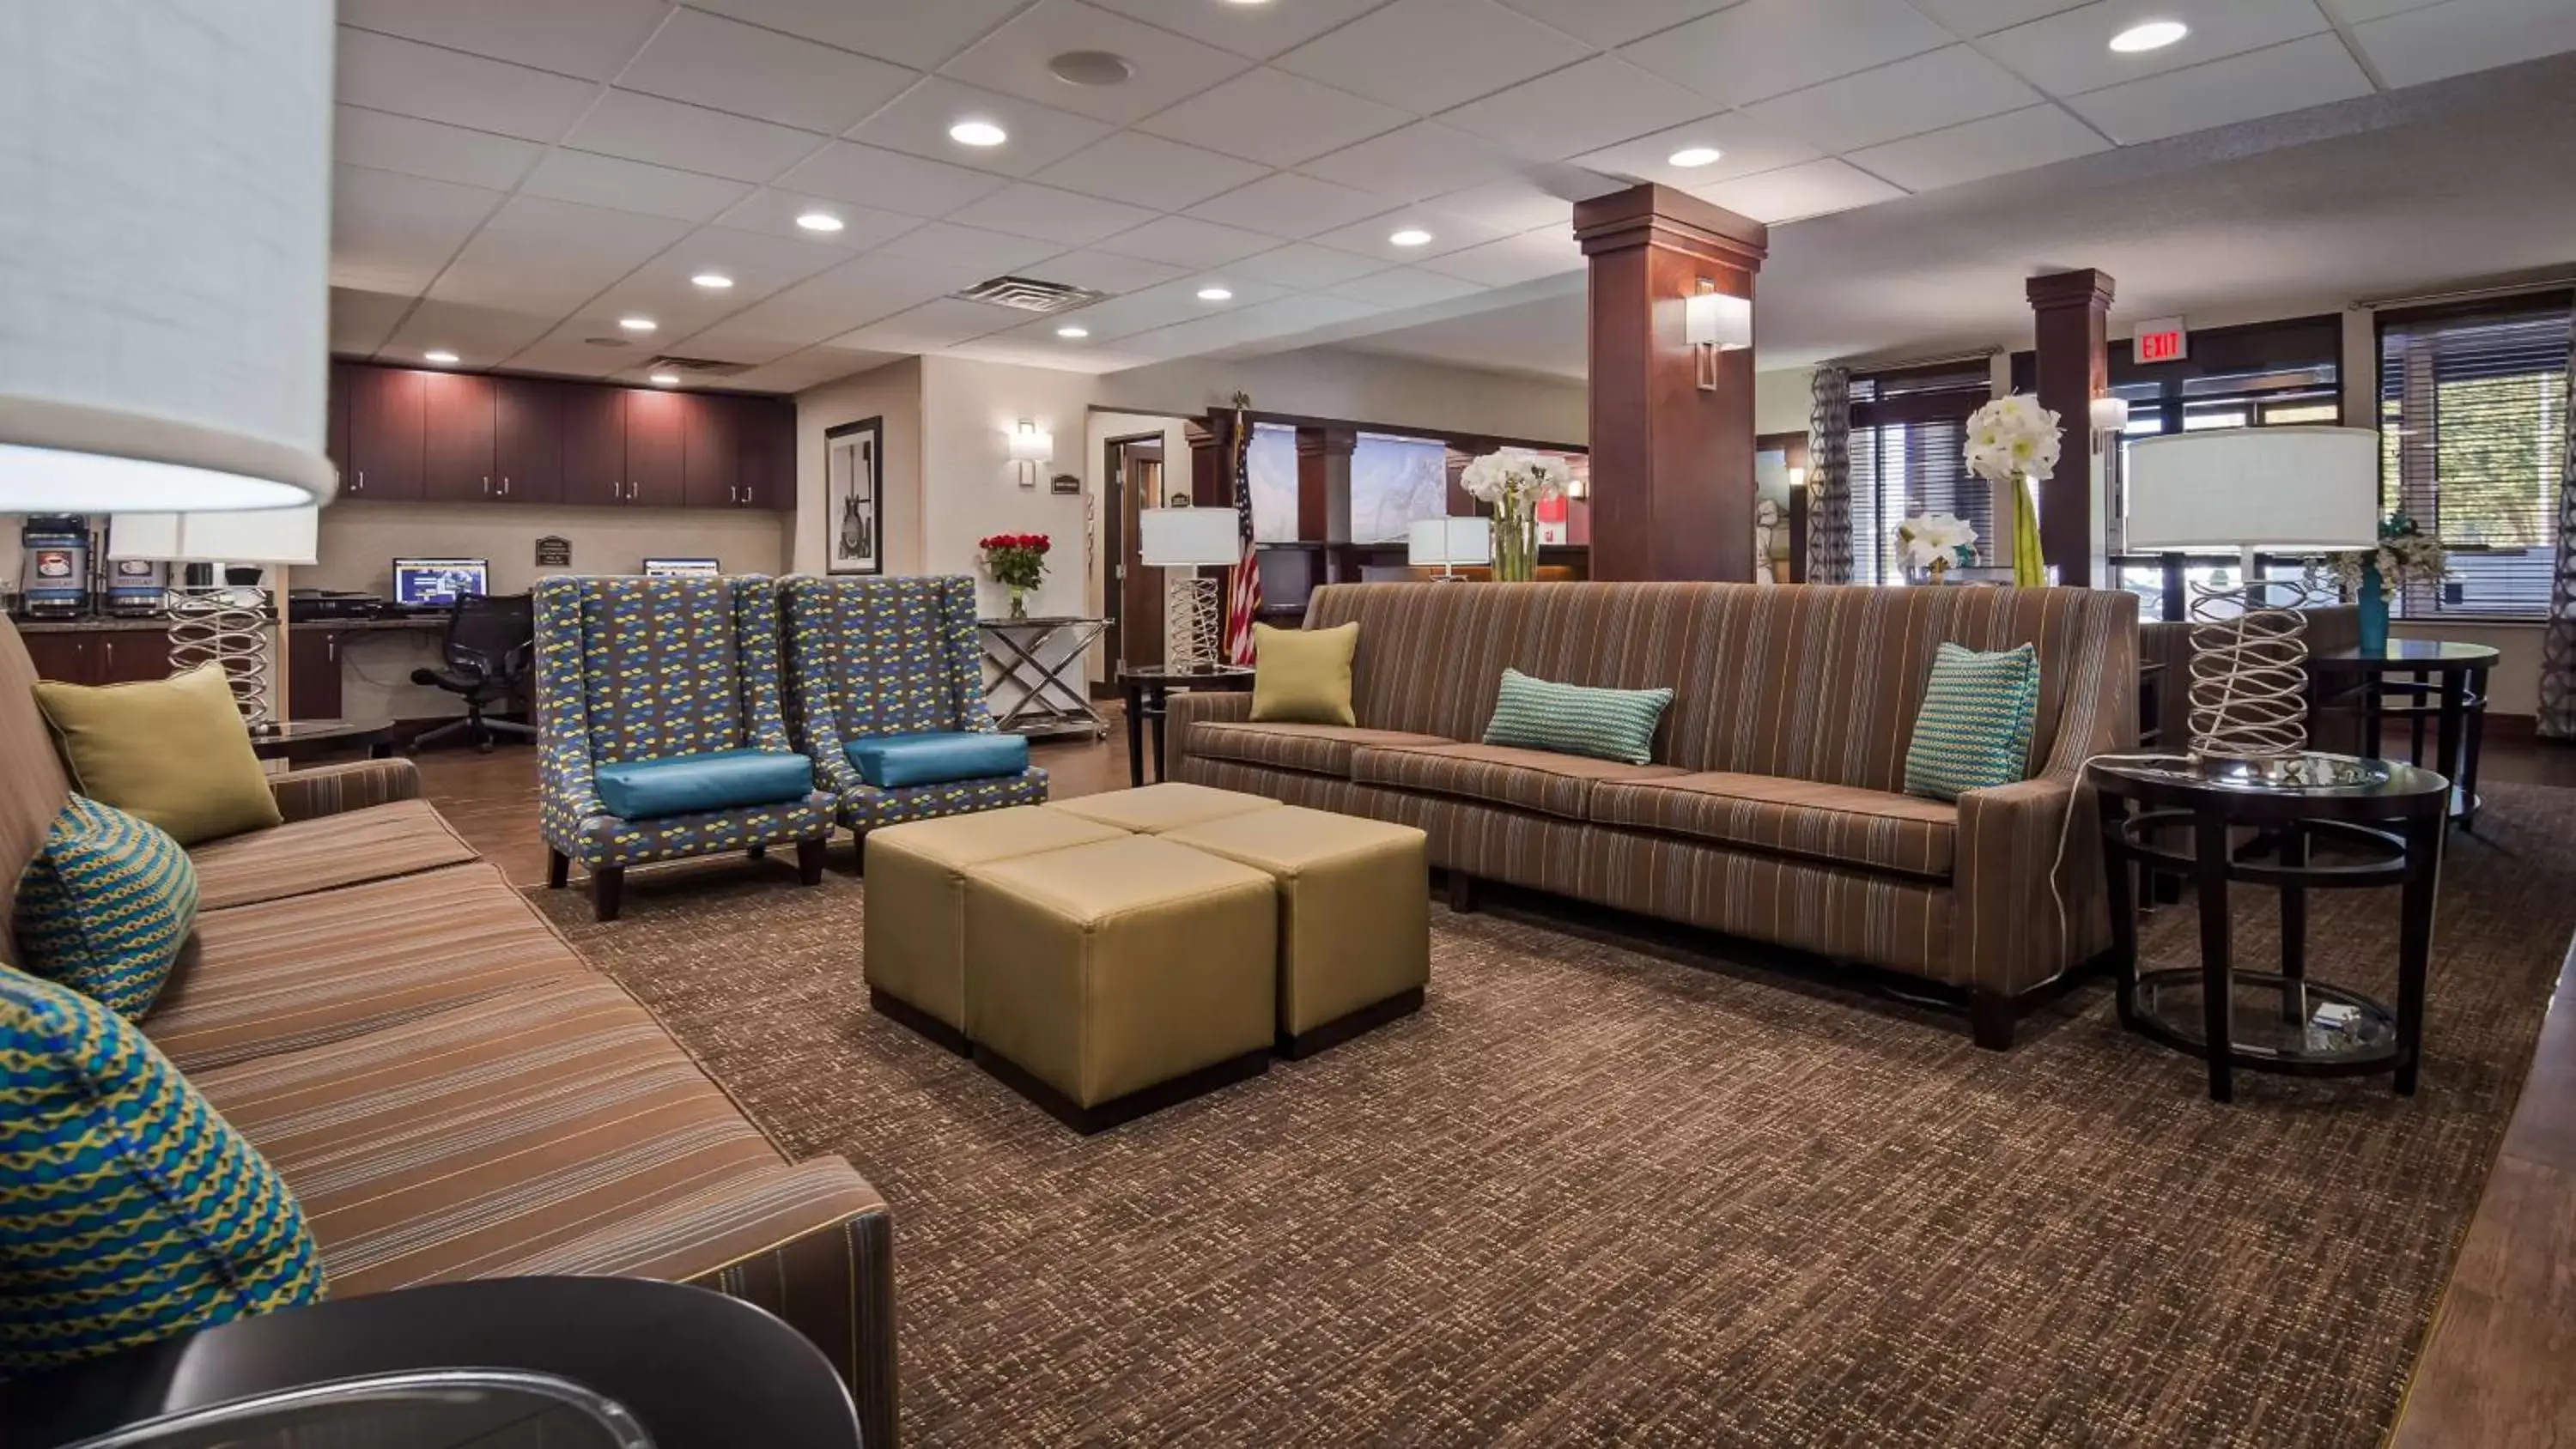 Lobby or reception in Best Western Plus Galleria Inn & Suites